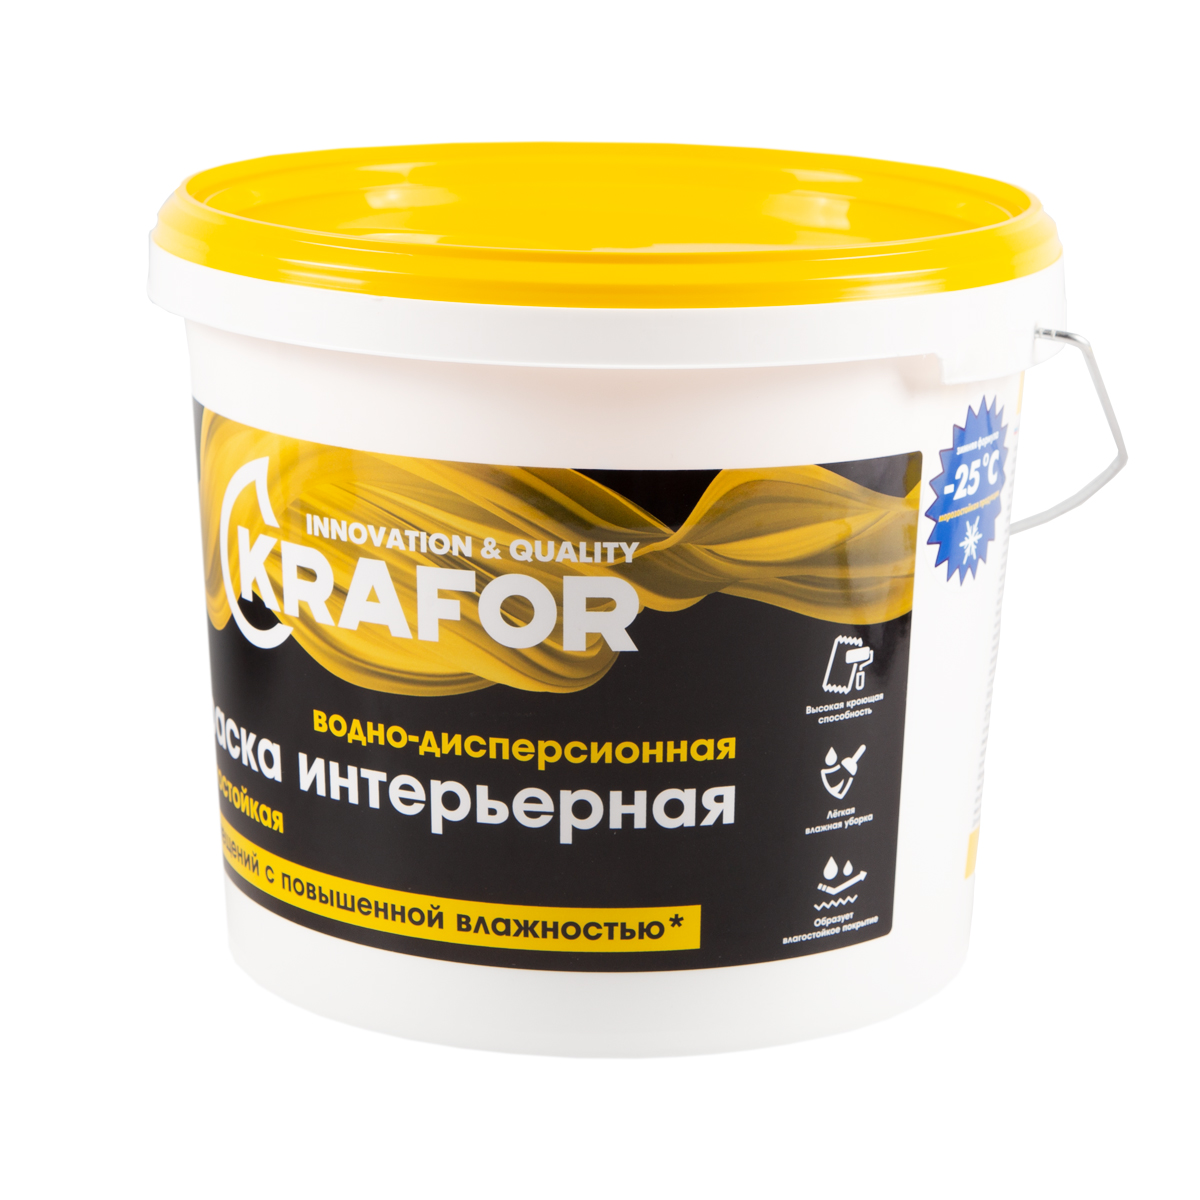 Краска в/д латексная  интер. влагостойкая  6,5 кг (1) "krafor"   (желт.)